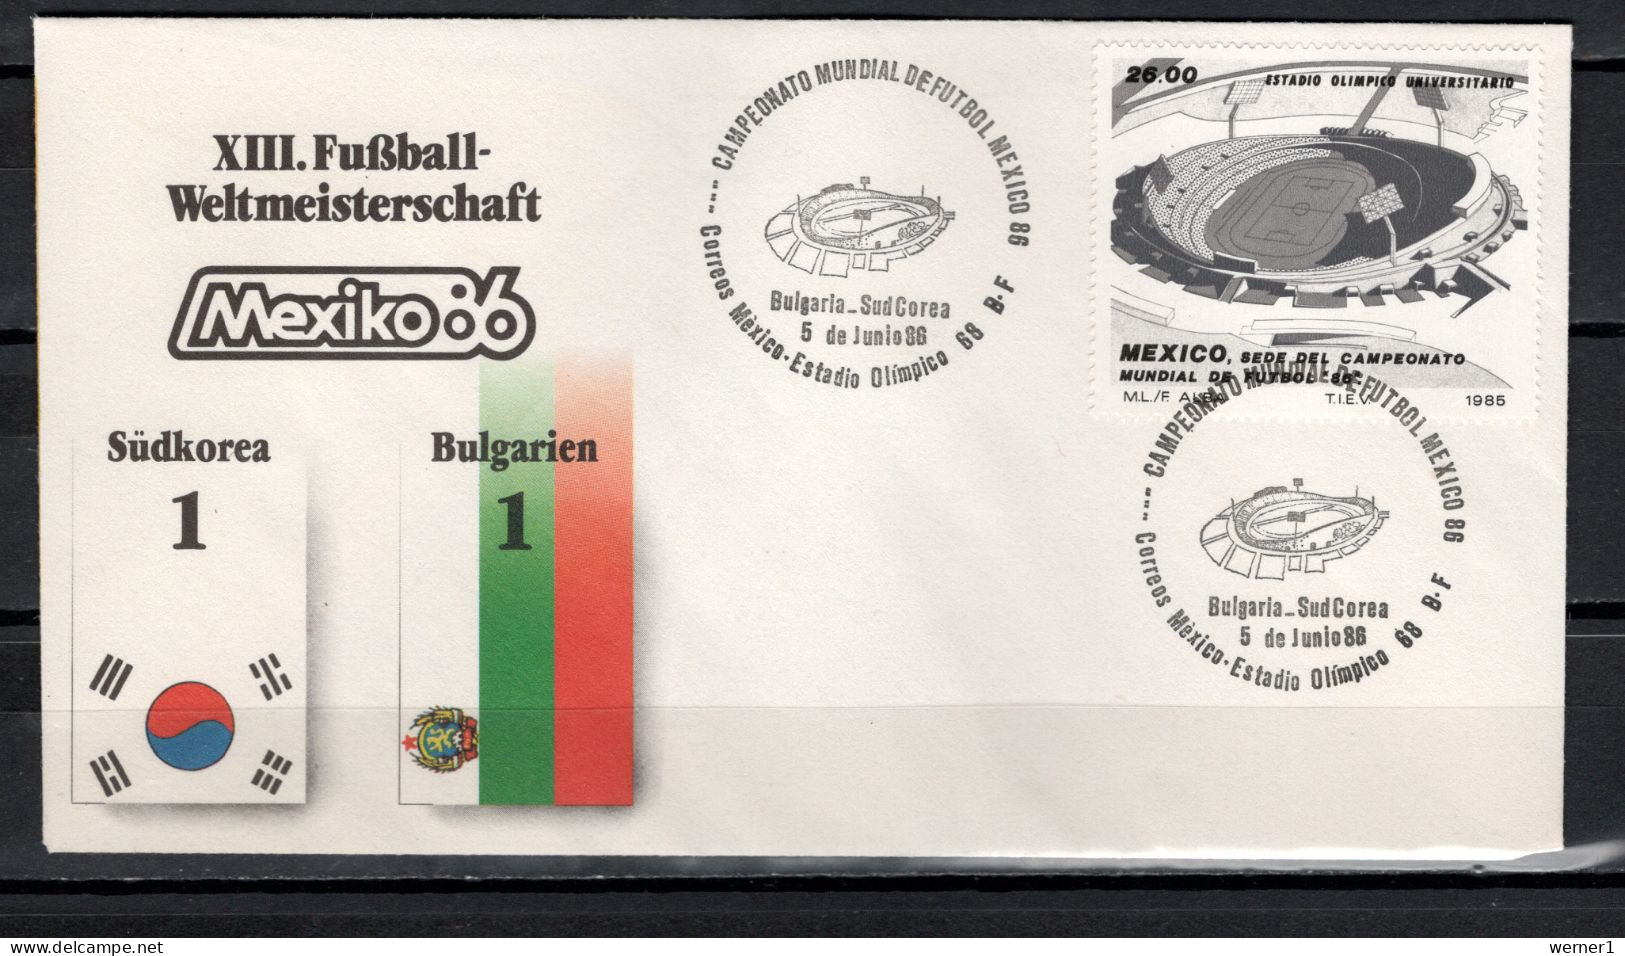 Mexico 1986 Football Soccer World Cup Commemorative Cover Match South Korea - Bulgaria  1 : 1 - 1986 – México